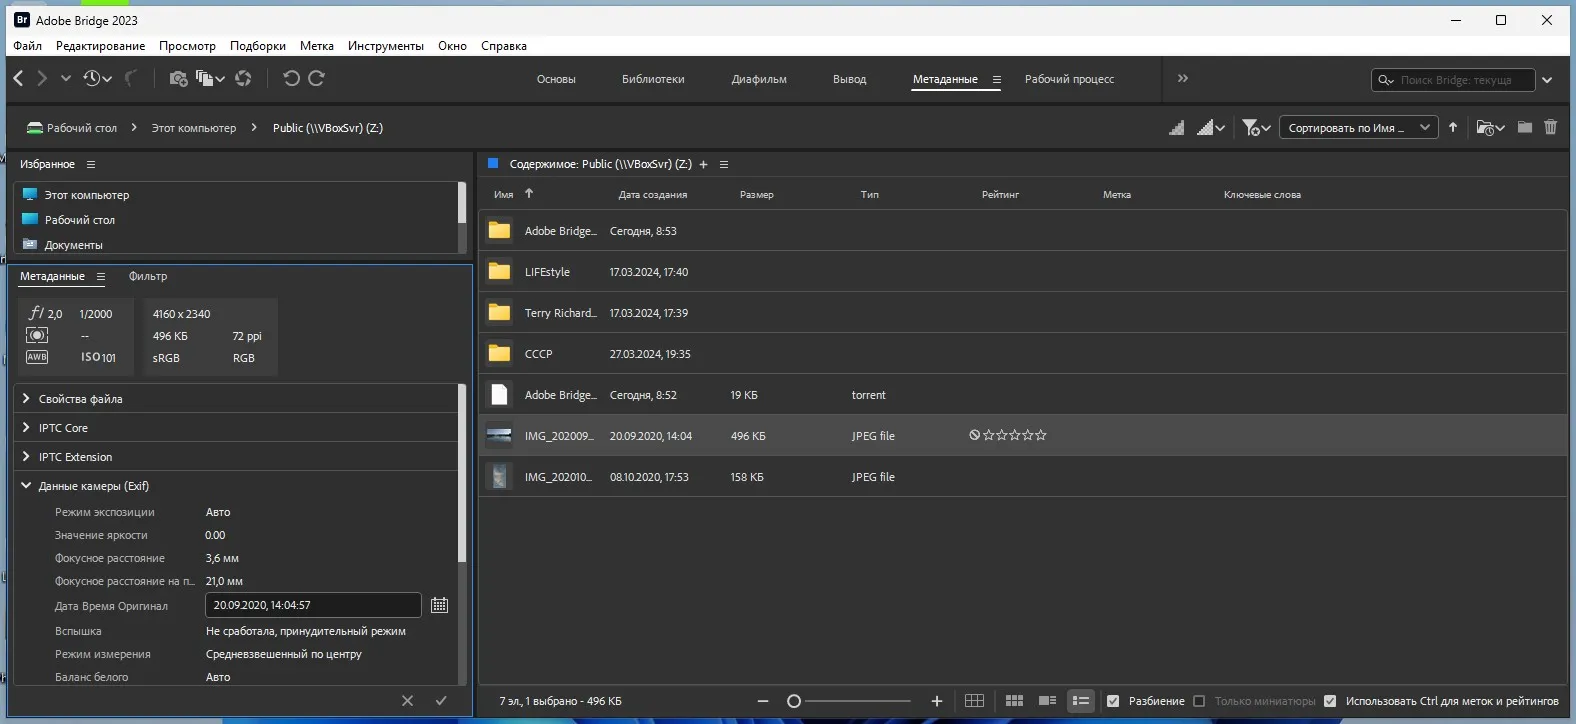 Интерфейс программы для просмотра и редактирования метаданных Adobe Bridge